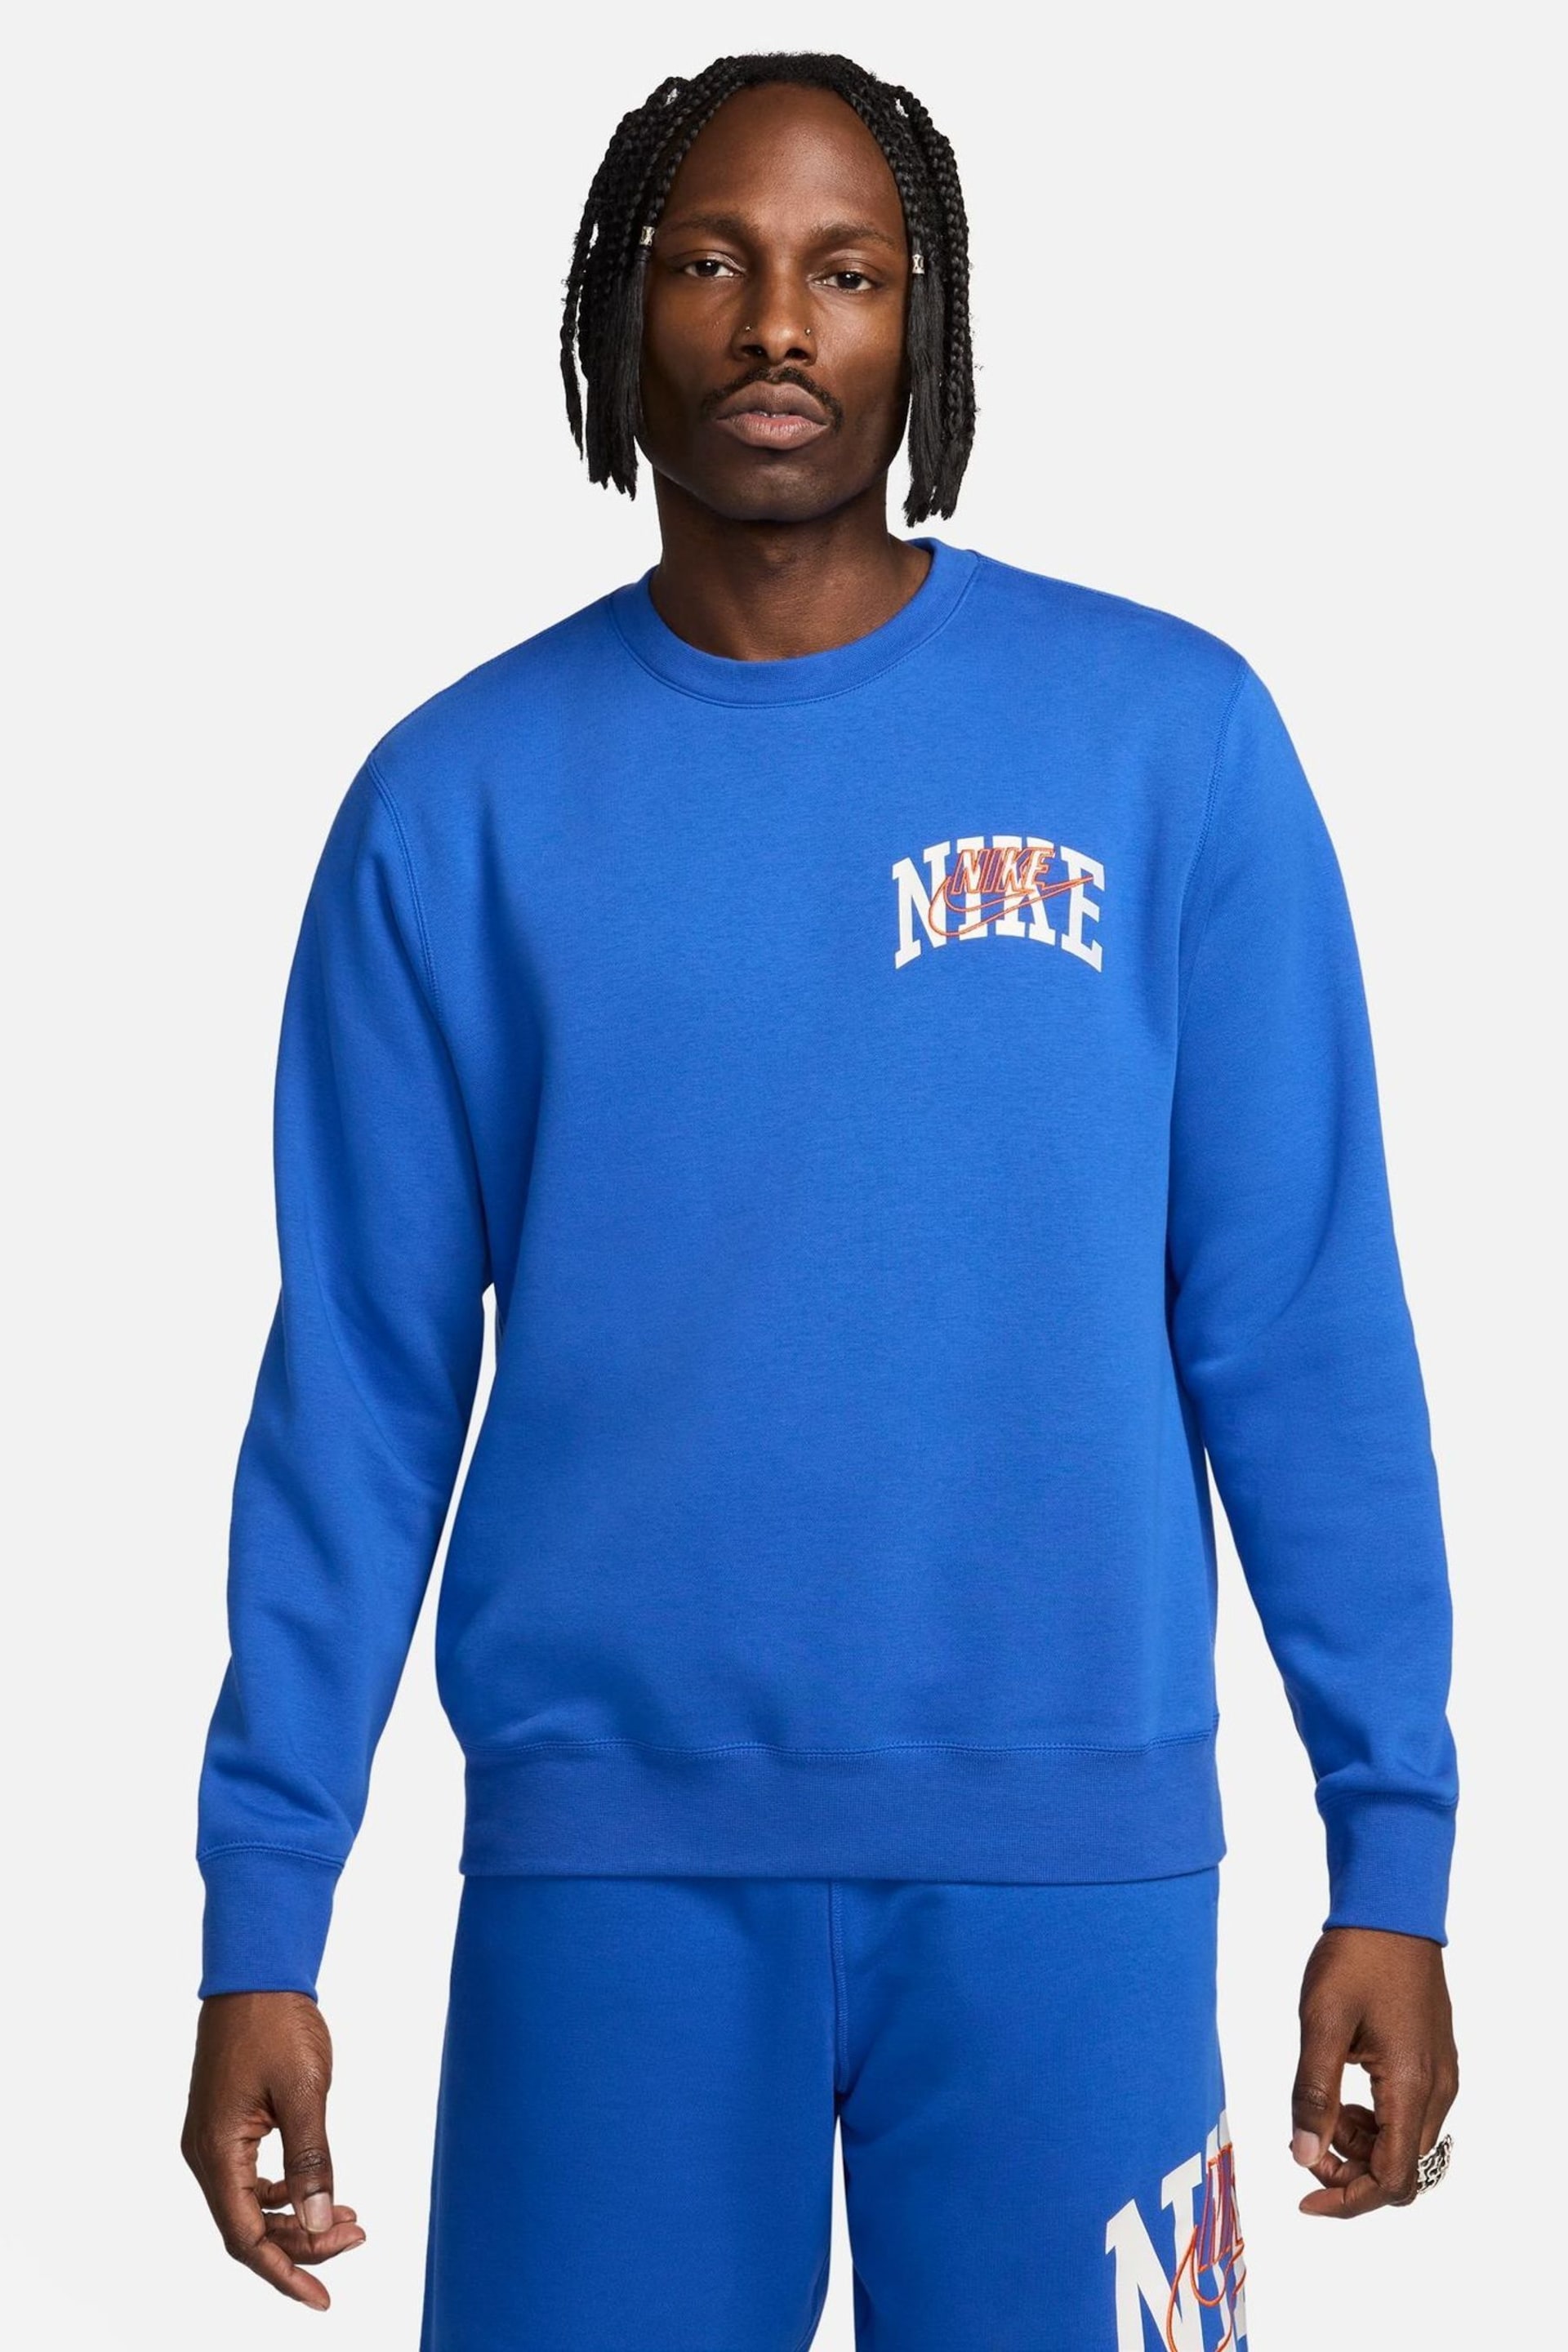 Nike Navy Club Fleece Crew Sweatshirt - Image 1 of 5